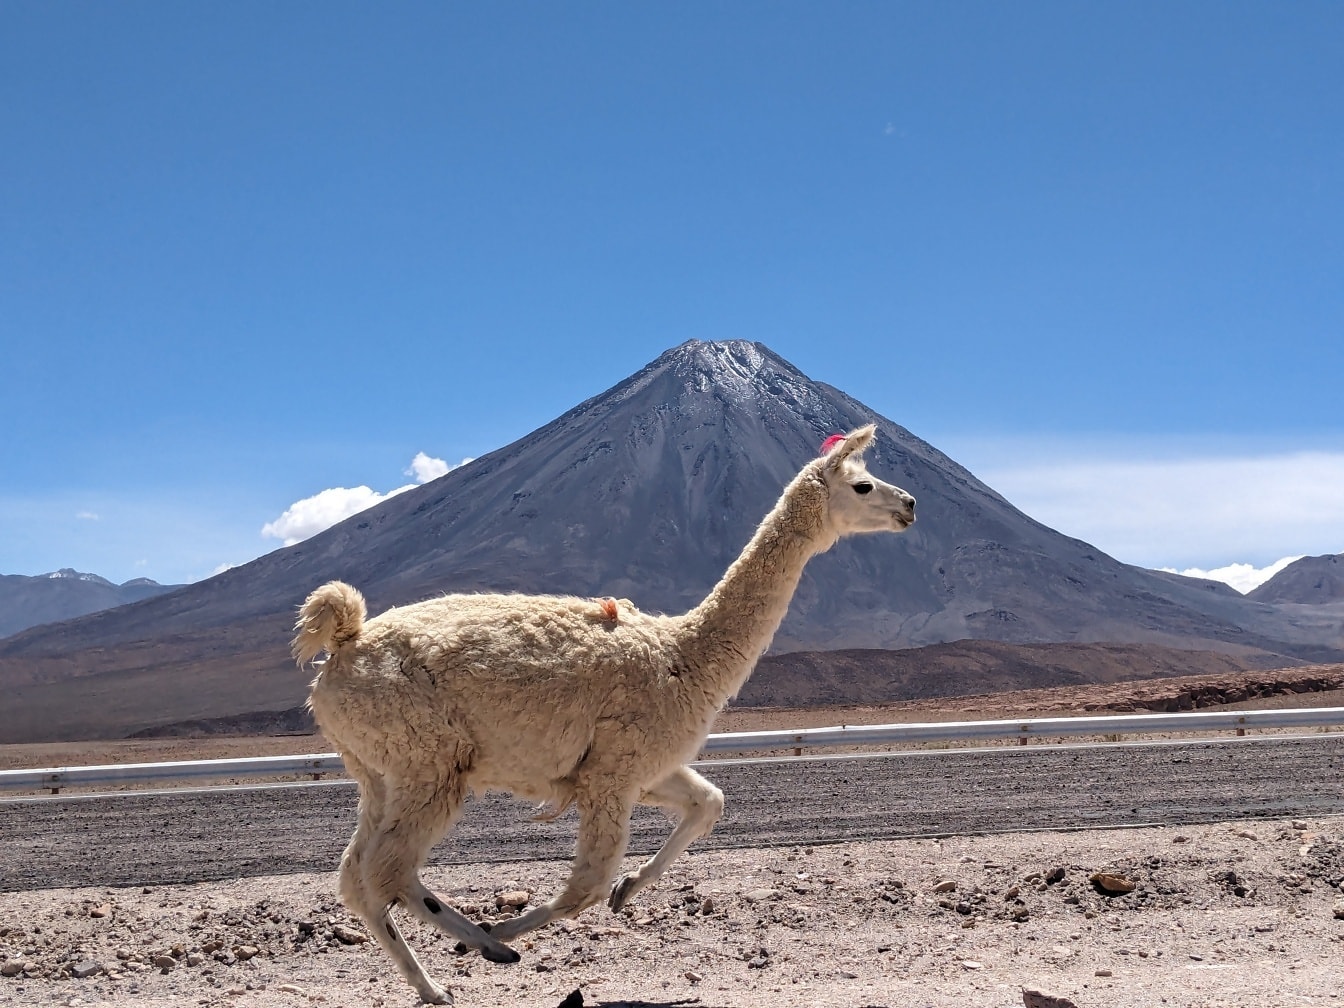 лама (Lama glama) одомашненный южноамериканский верблюд, бегущий по боливийской пустыне